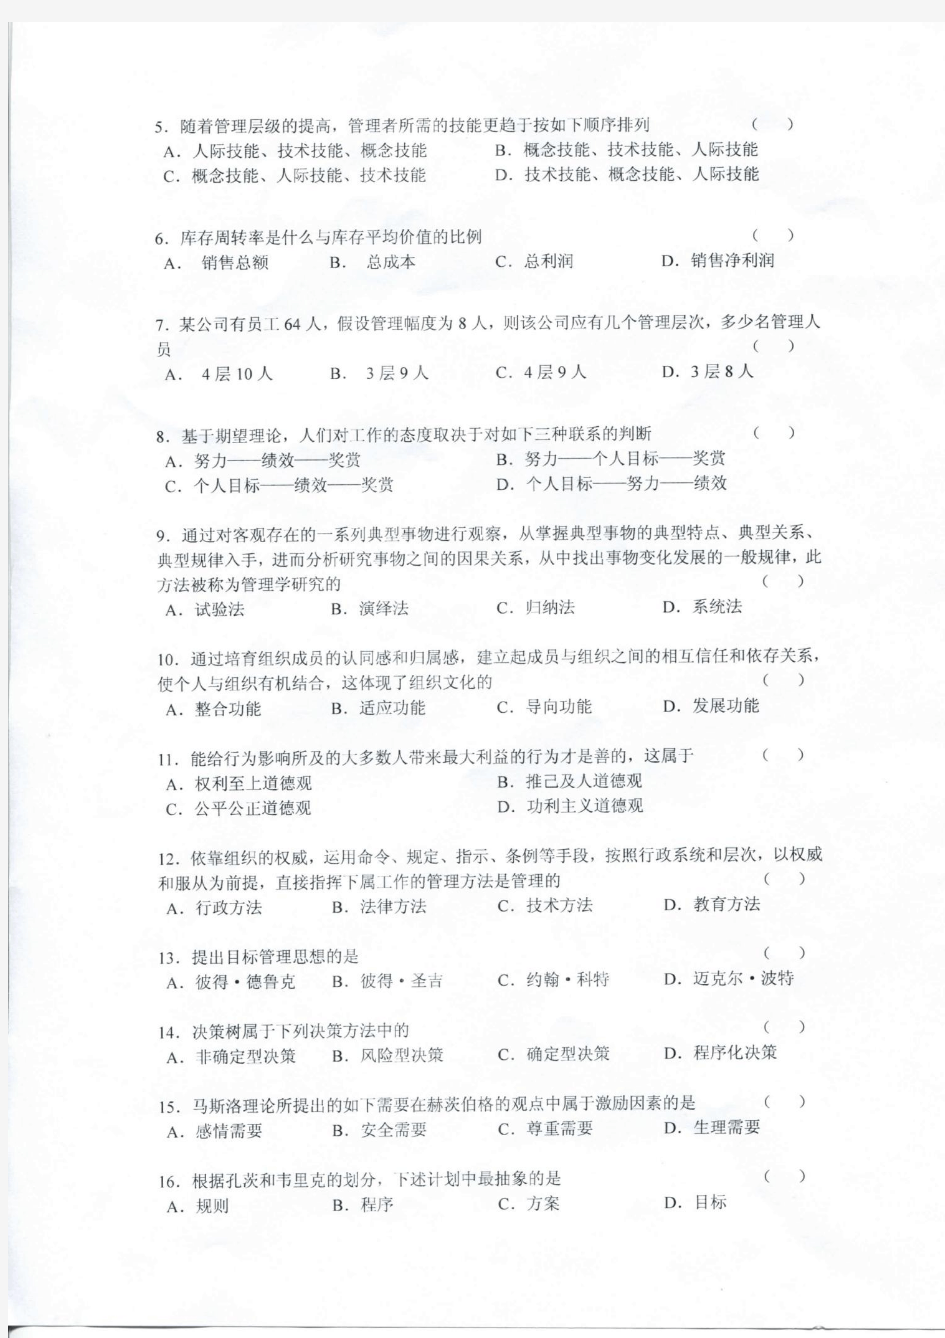 上海海事大学-2011 年攻读硕士学位研究生入学考试试题-管理学